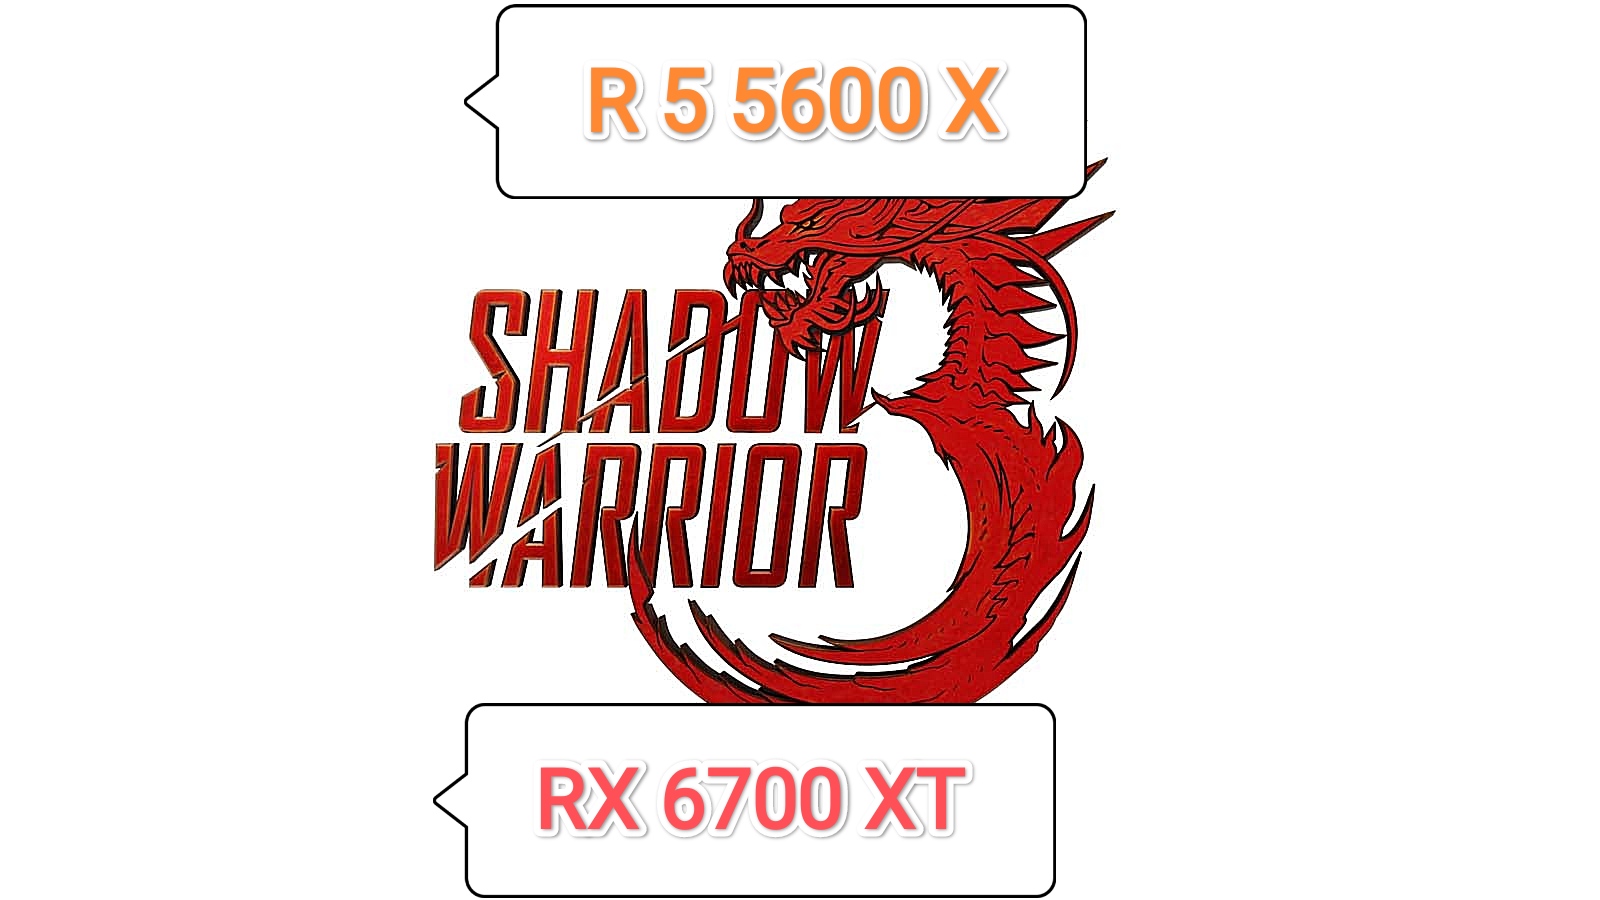 Shadow Warrior 3 DE v.1.06 - тест игры на RX 6700 XT/R 5 5600 X